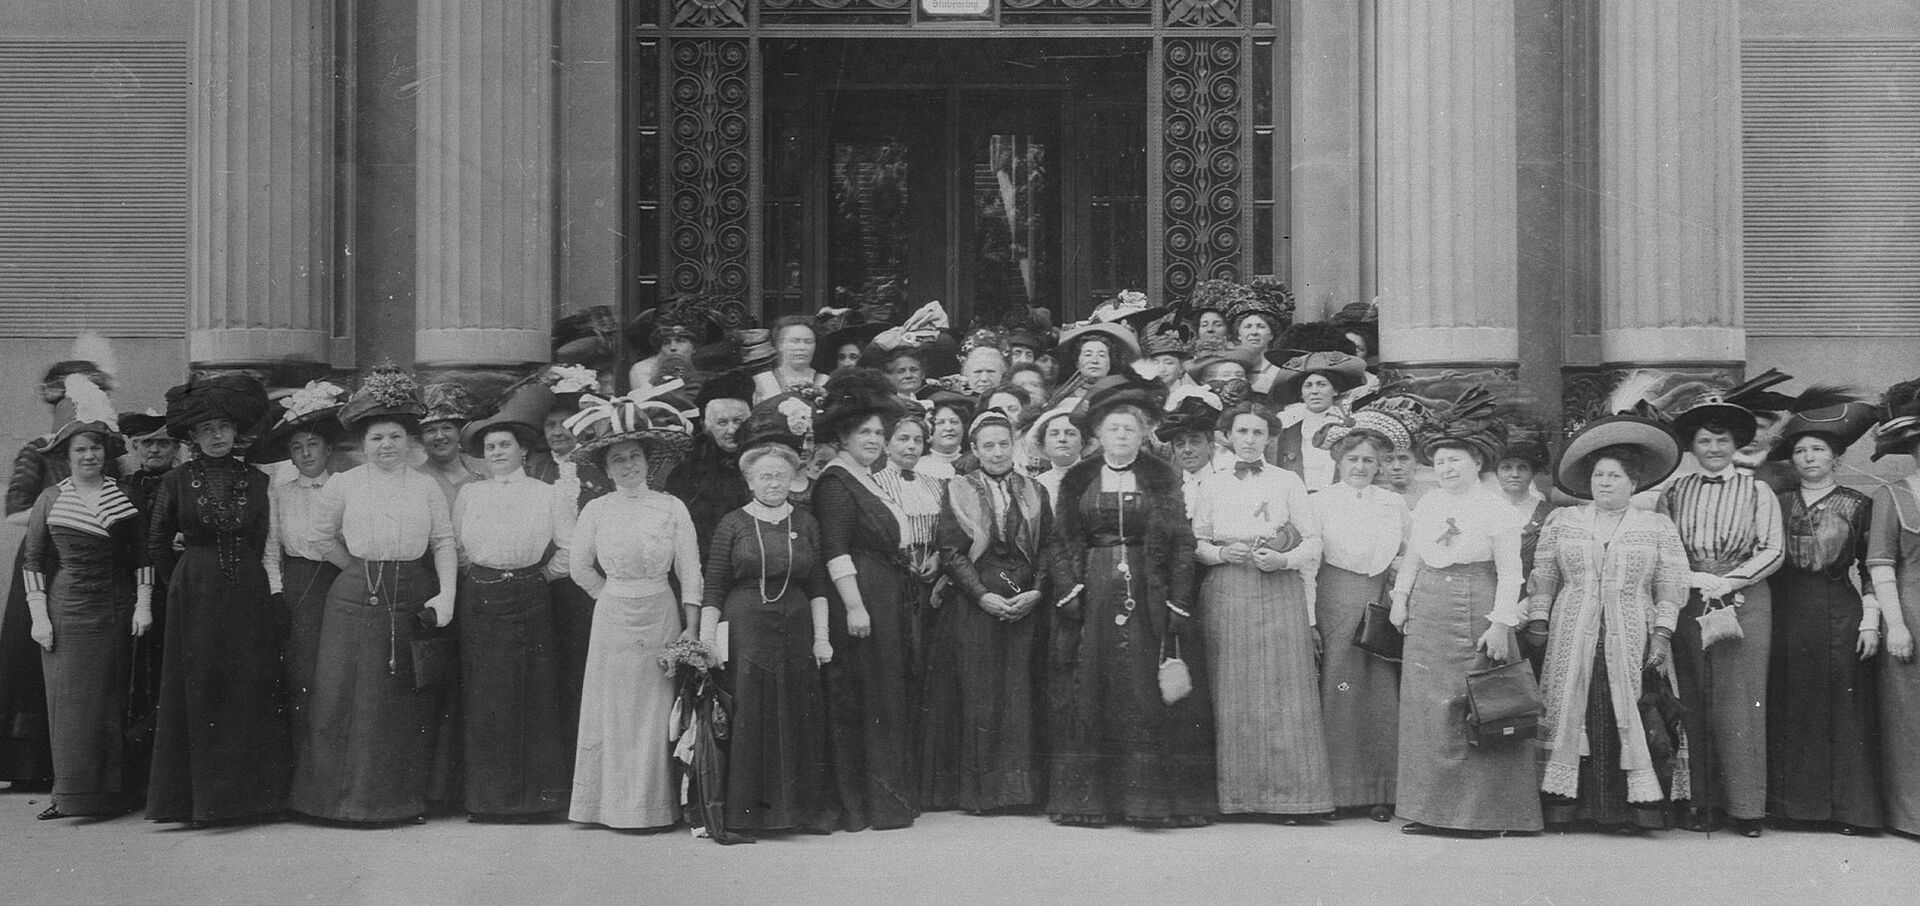 Schwarz-weiß Aufnahme, Elegant gekleidete Damen mit Hüten, Generalversammlung des Bundes Österreichischer Frauenvereine am 13. Mai 1911 vor dem Portal der Handelskammer in Wien, Stubenring 8-10. 